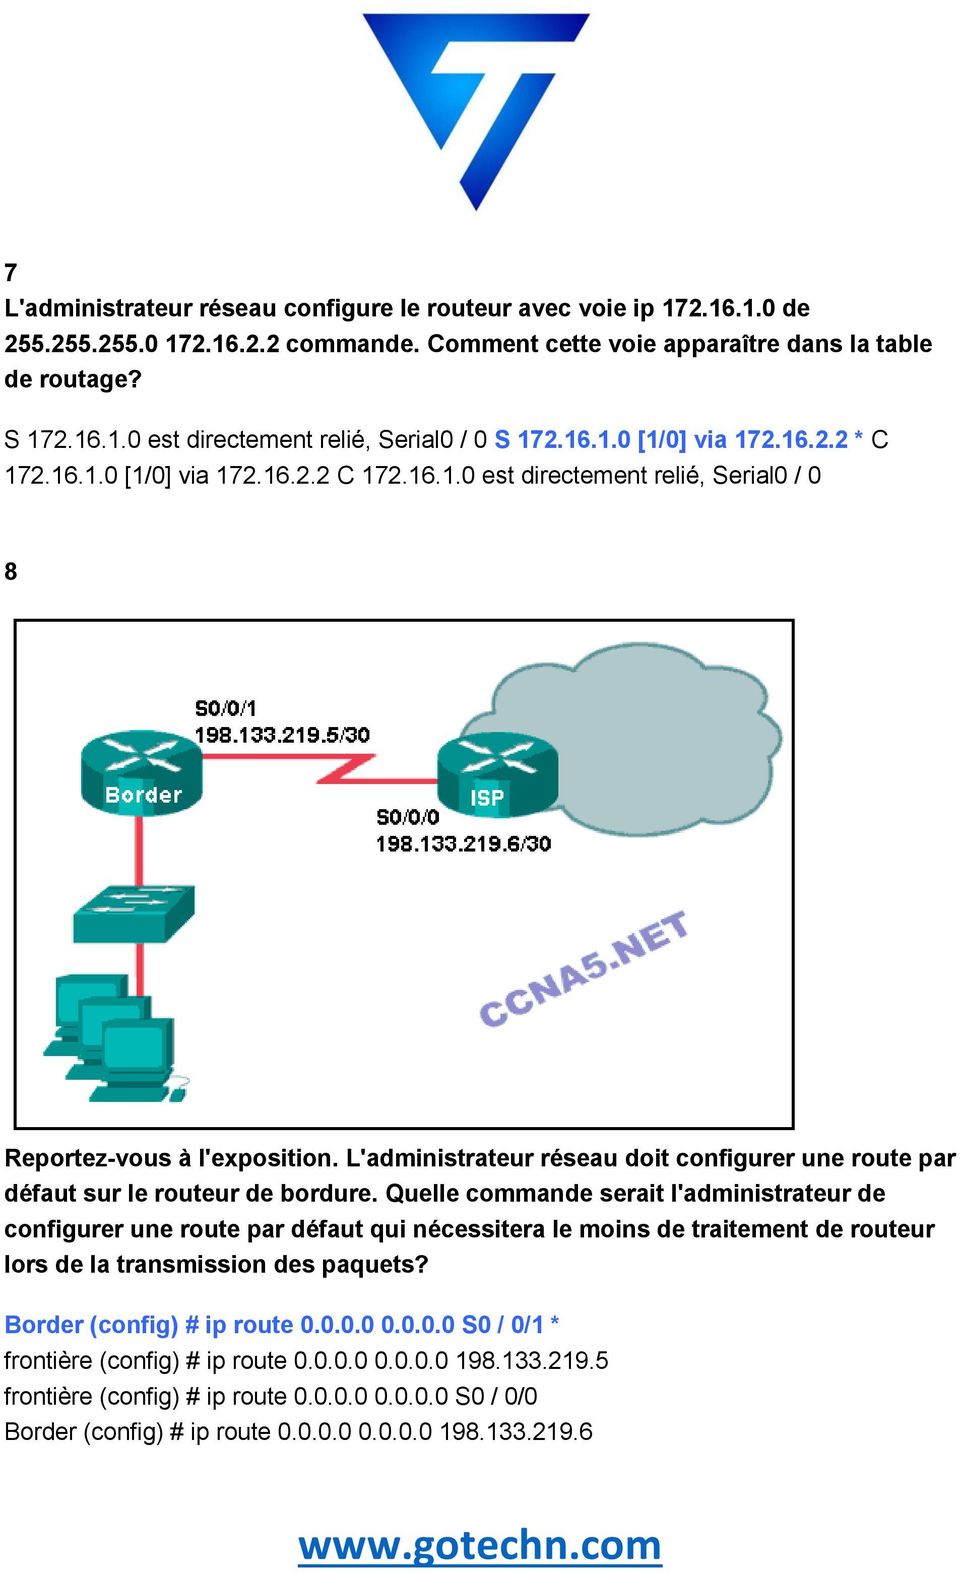 L'administrateur réseau doit configurer une route par défaut sur le routeur de bordure.